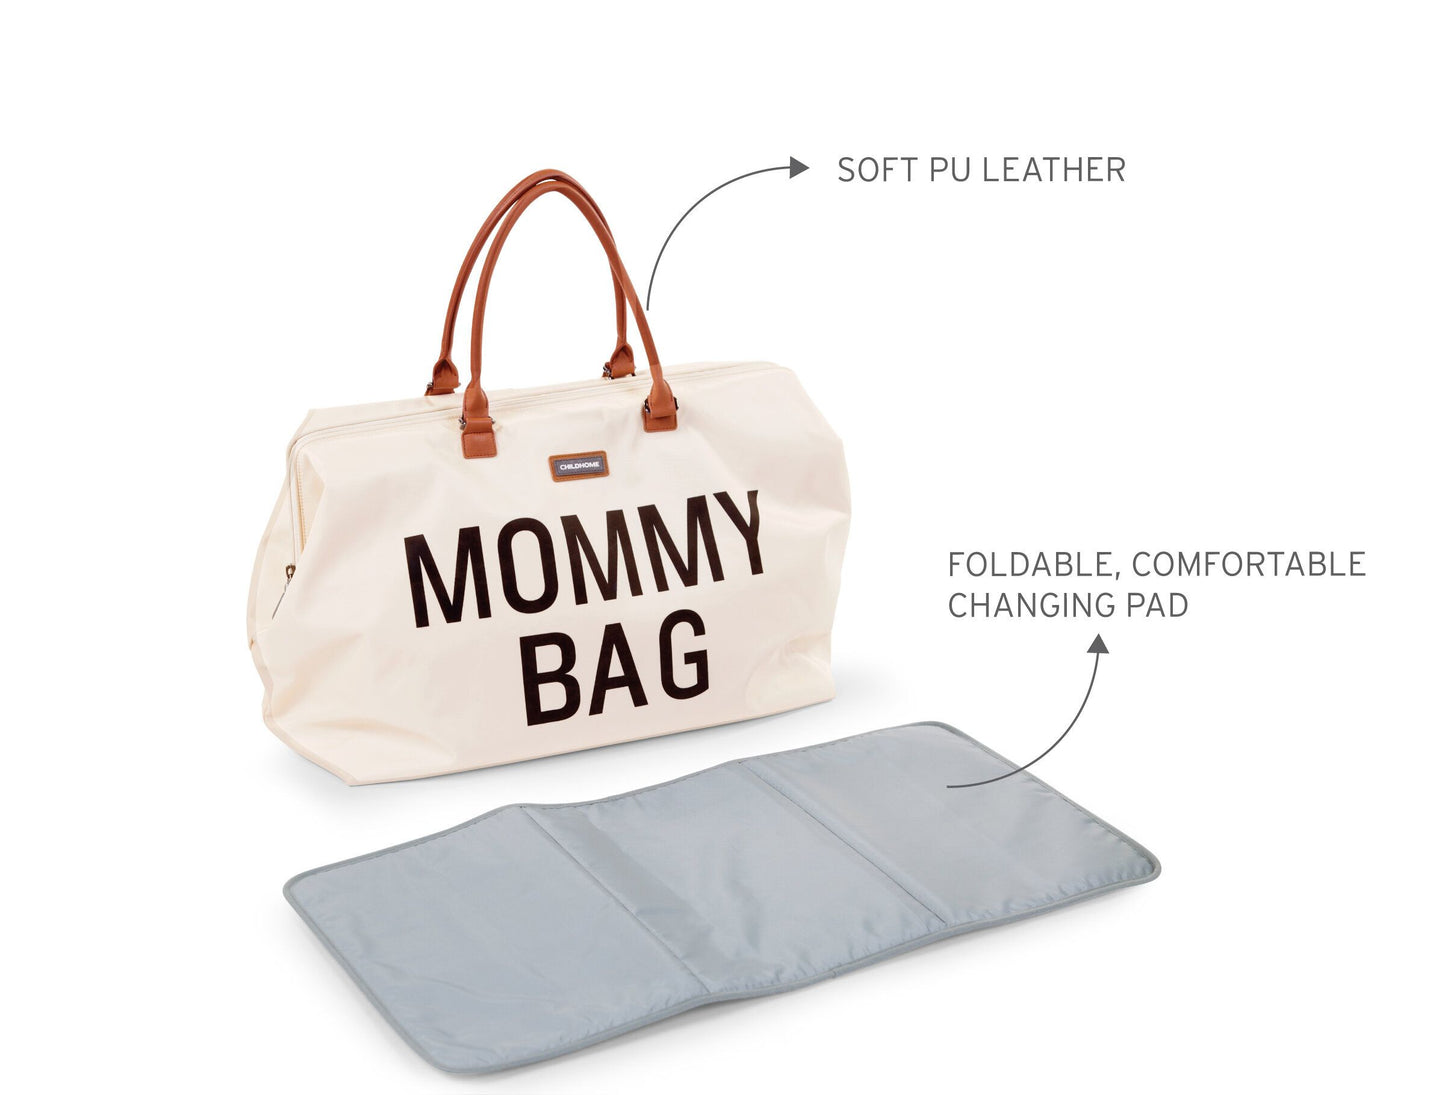 MOMMY BAG ® -  Off white